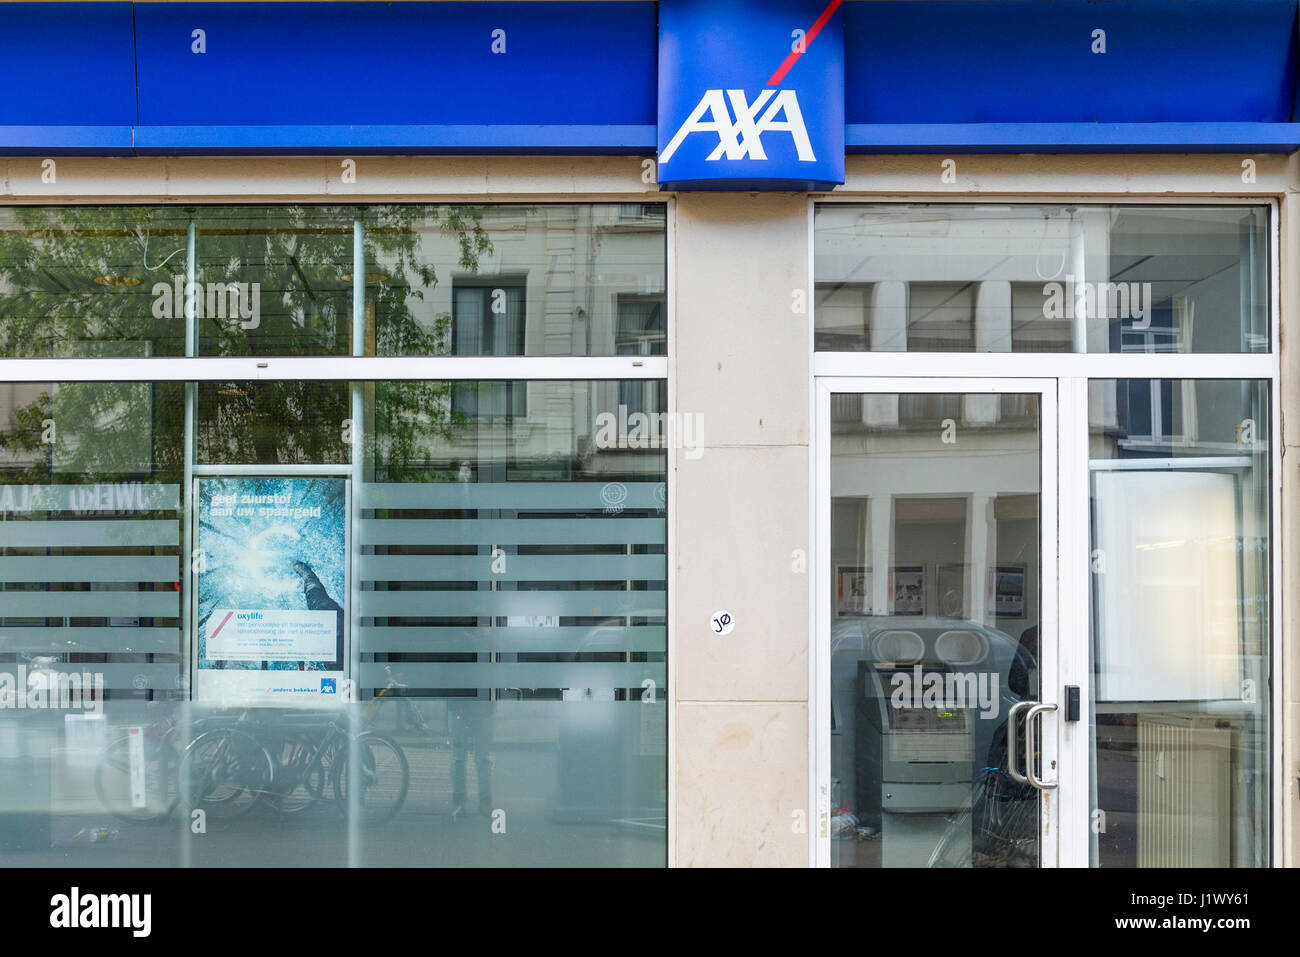 Axa bank in Antwerp Stock Photo - Alamy